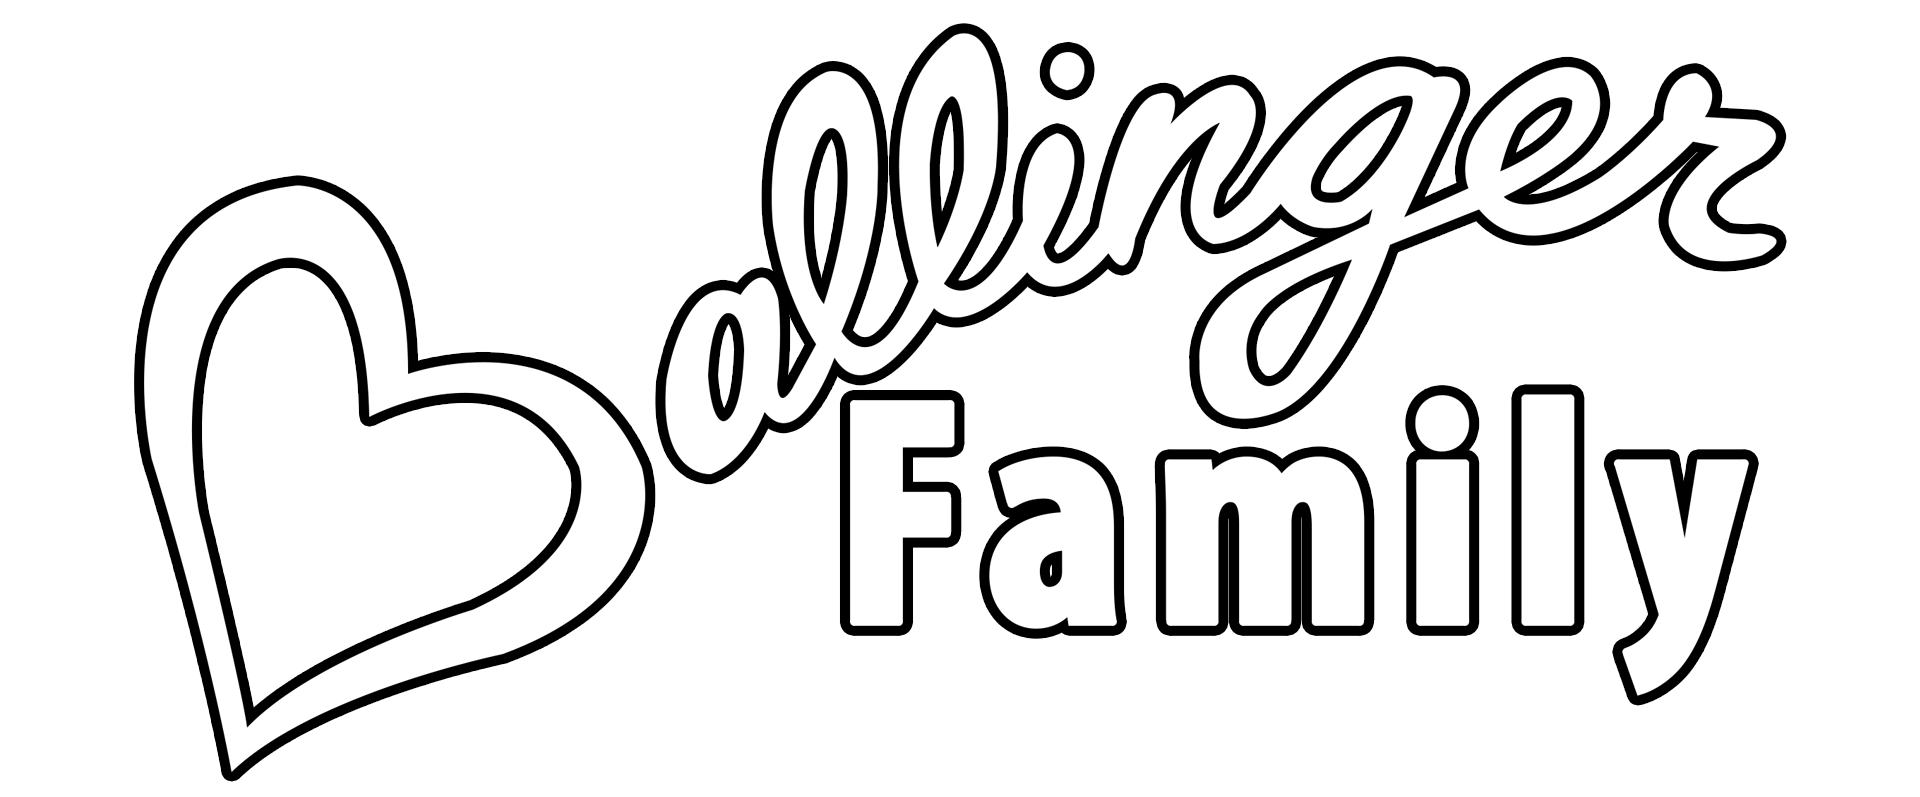 Ballinger Family